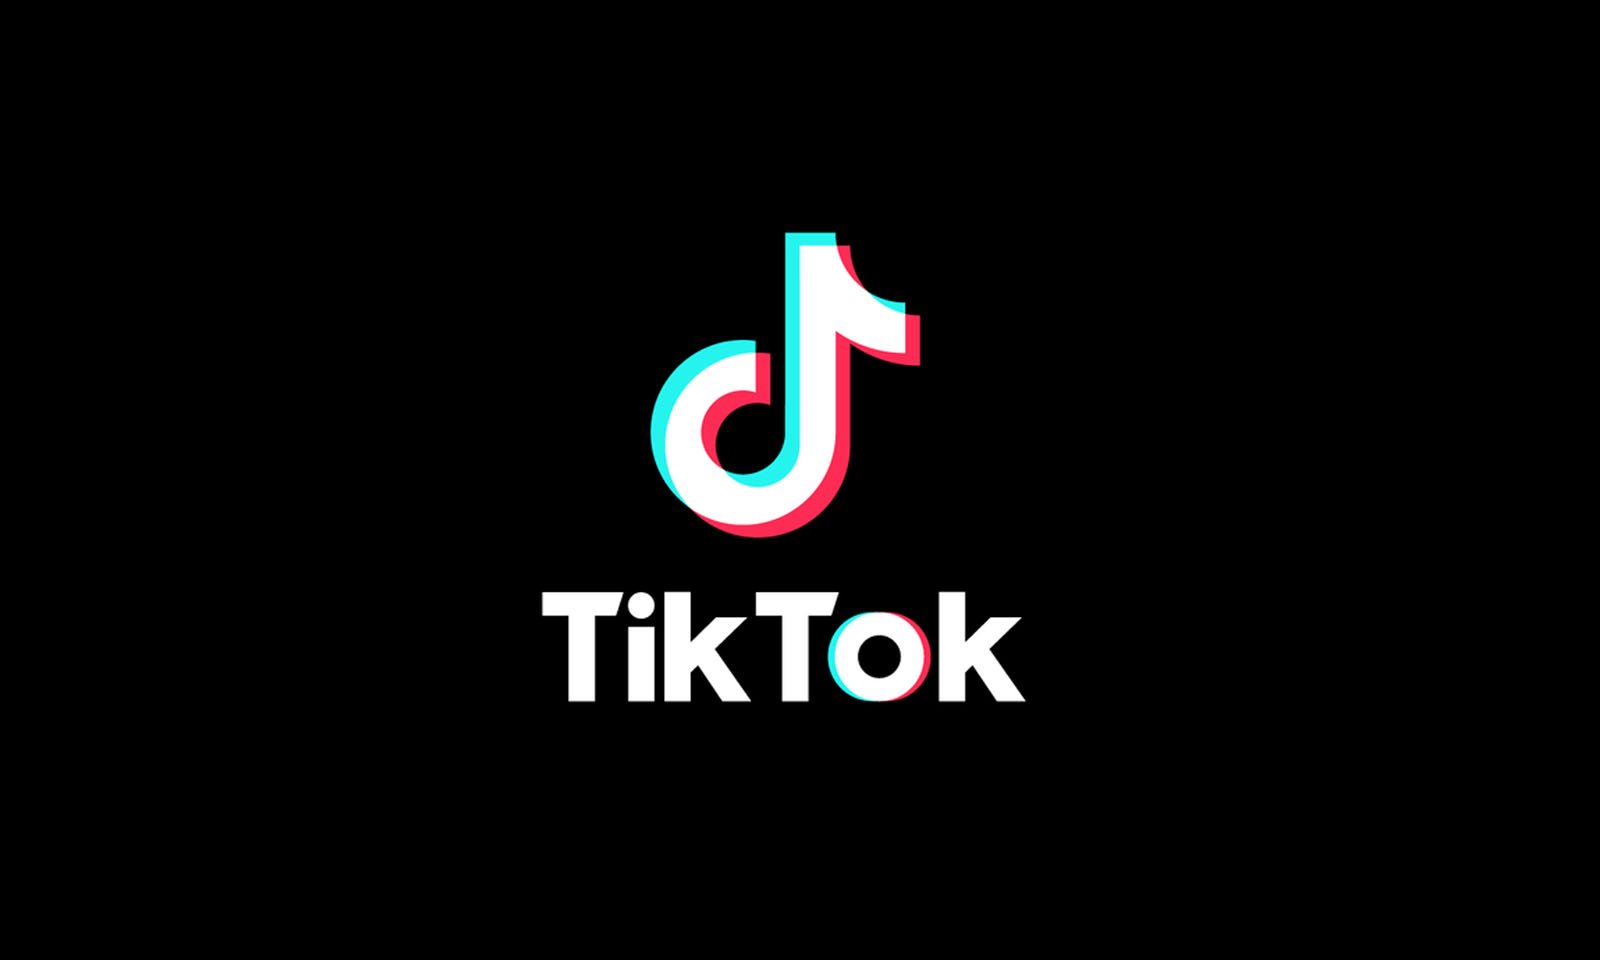 Usuários do Tik Tok reclamam de 'censura' de conteúdo LGBTQ+, #BlackLivesMatter e George Floyd